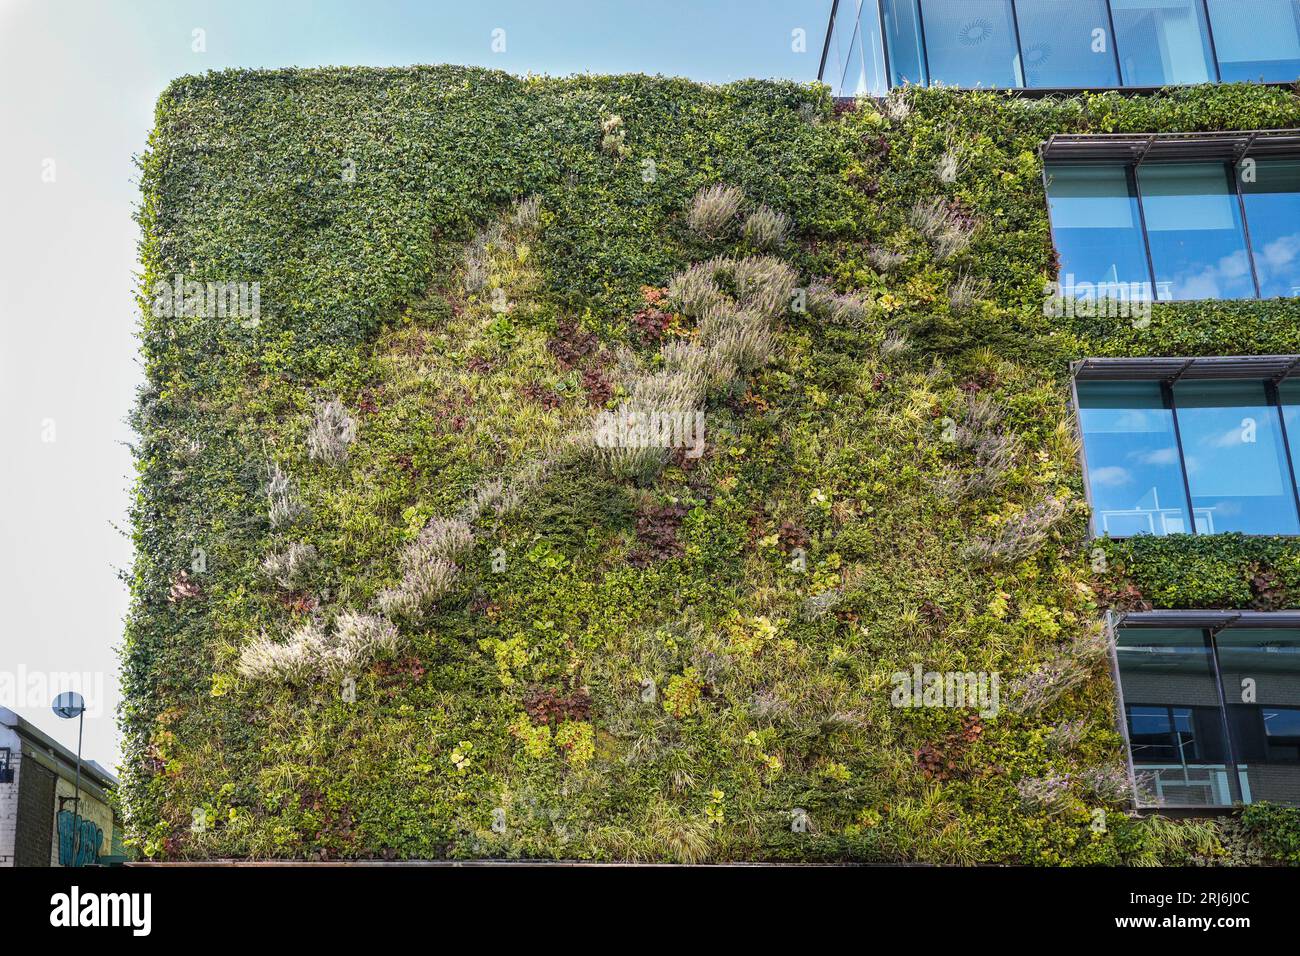 Living wall or green vertical garden, planted building exterior, MTV Studios, Camden, Camden Town, London, England Stock Photo